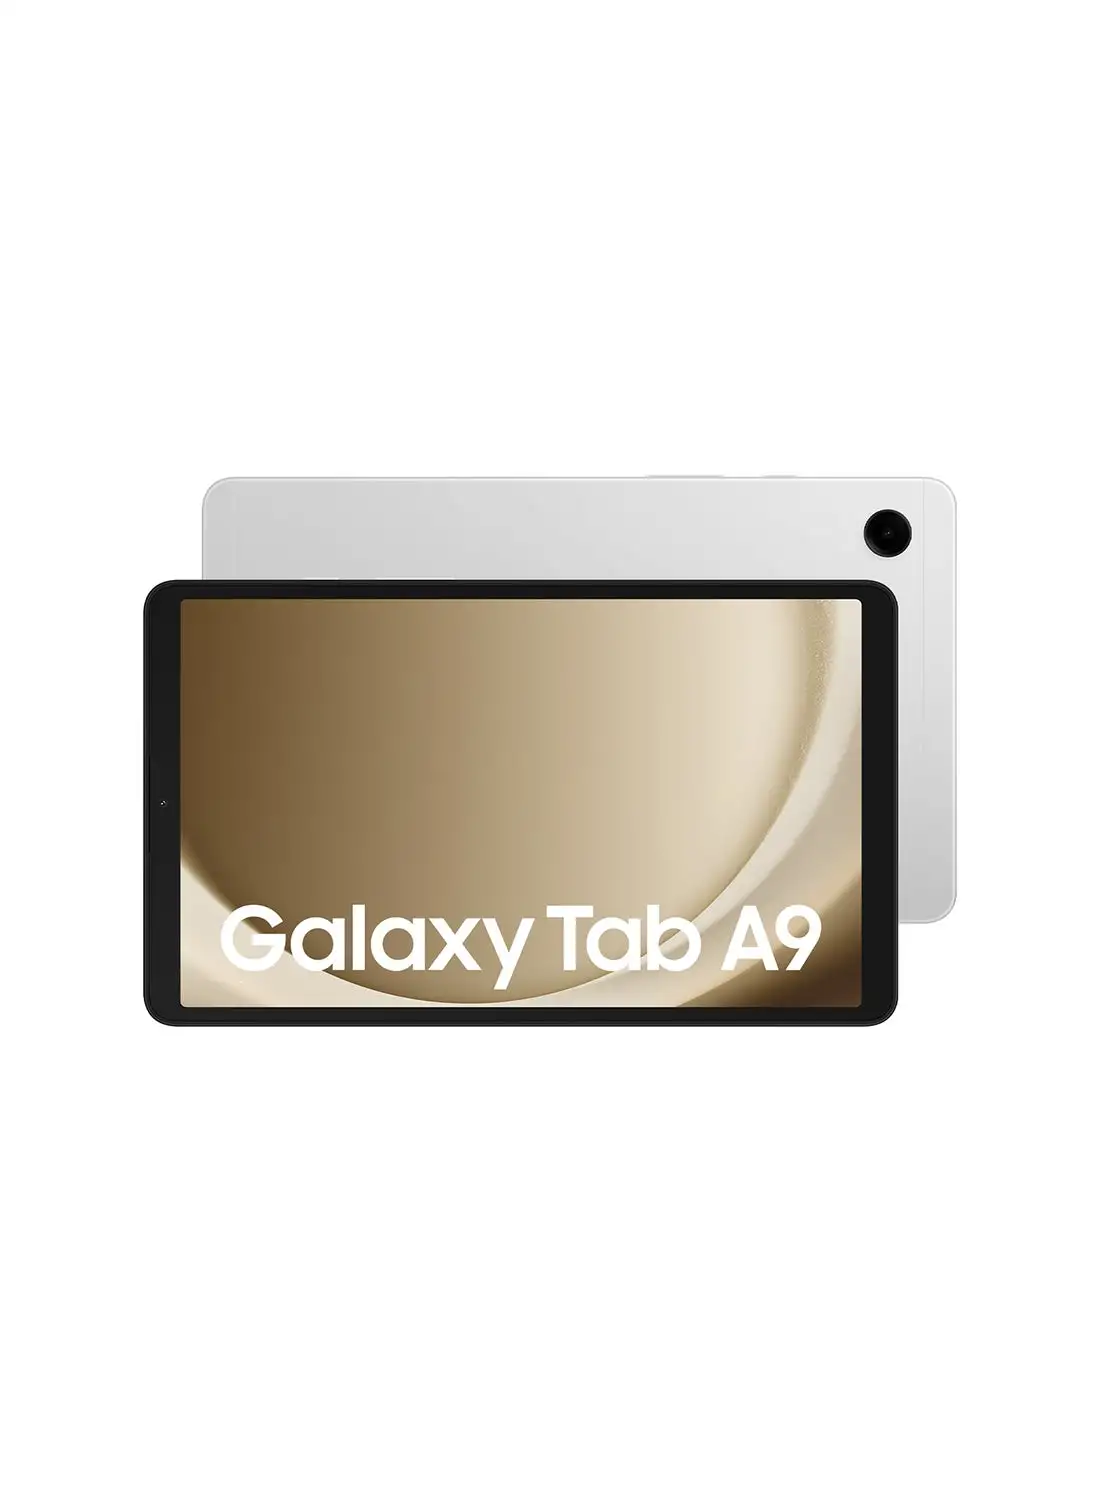 Samsung Galaxy Tab A9 Silver 8GB RAM 128GB Wifi - Middle East Version